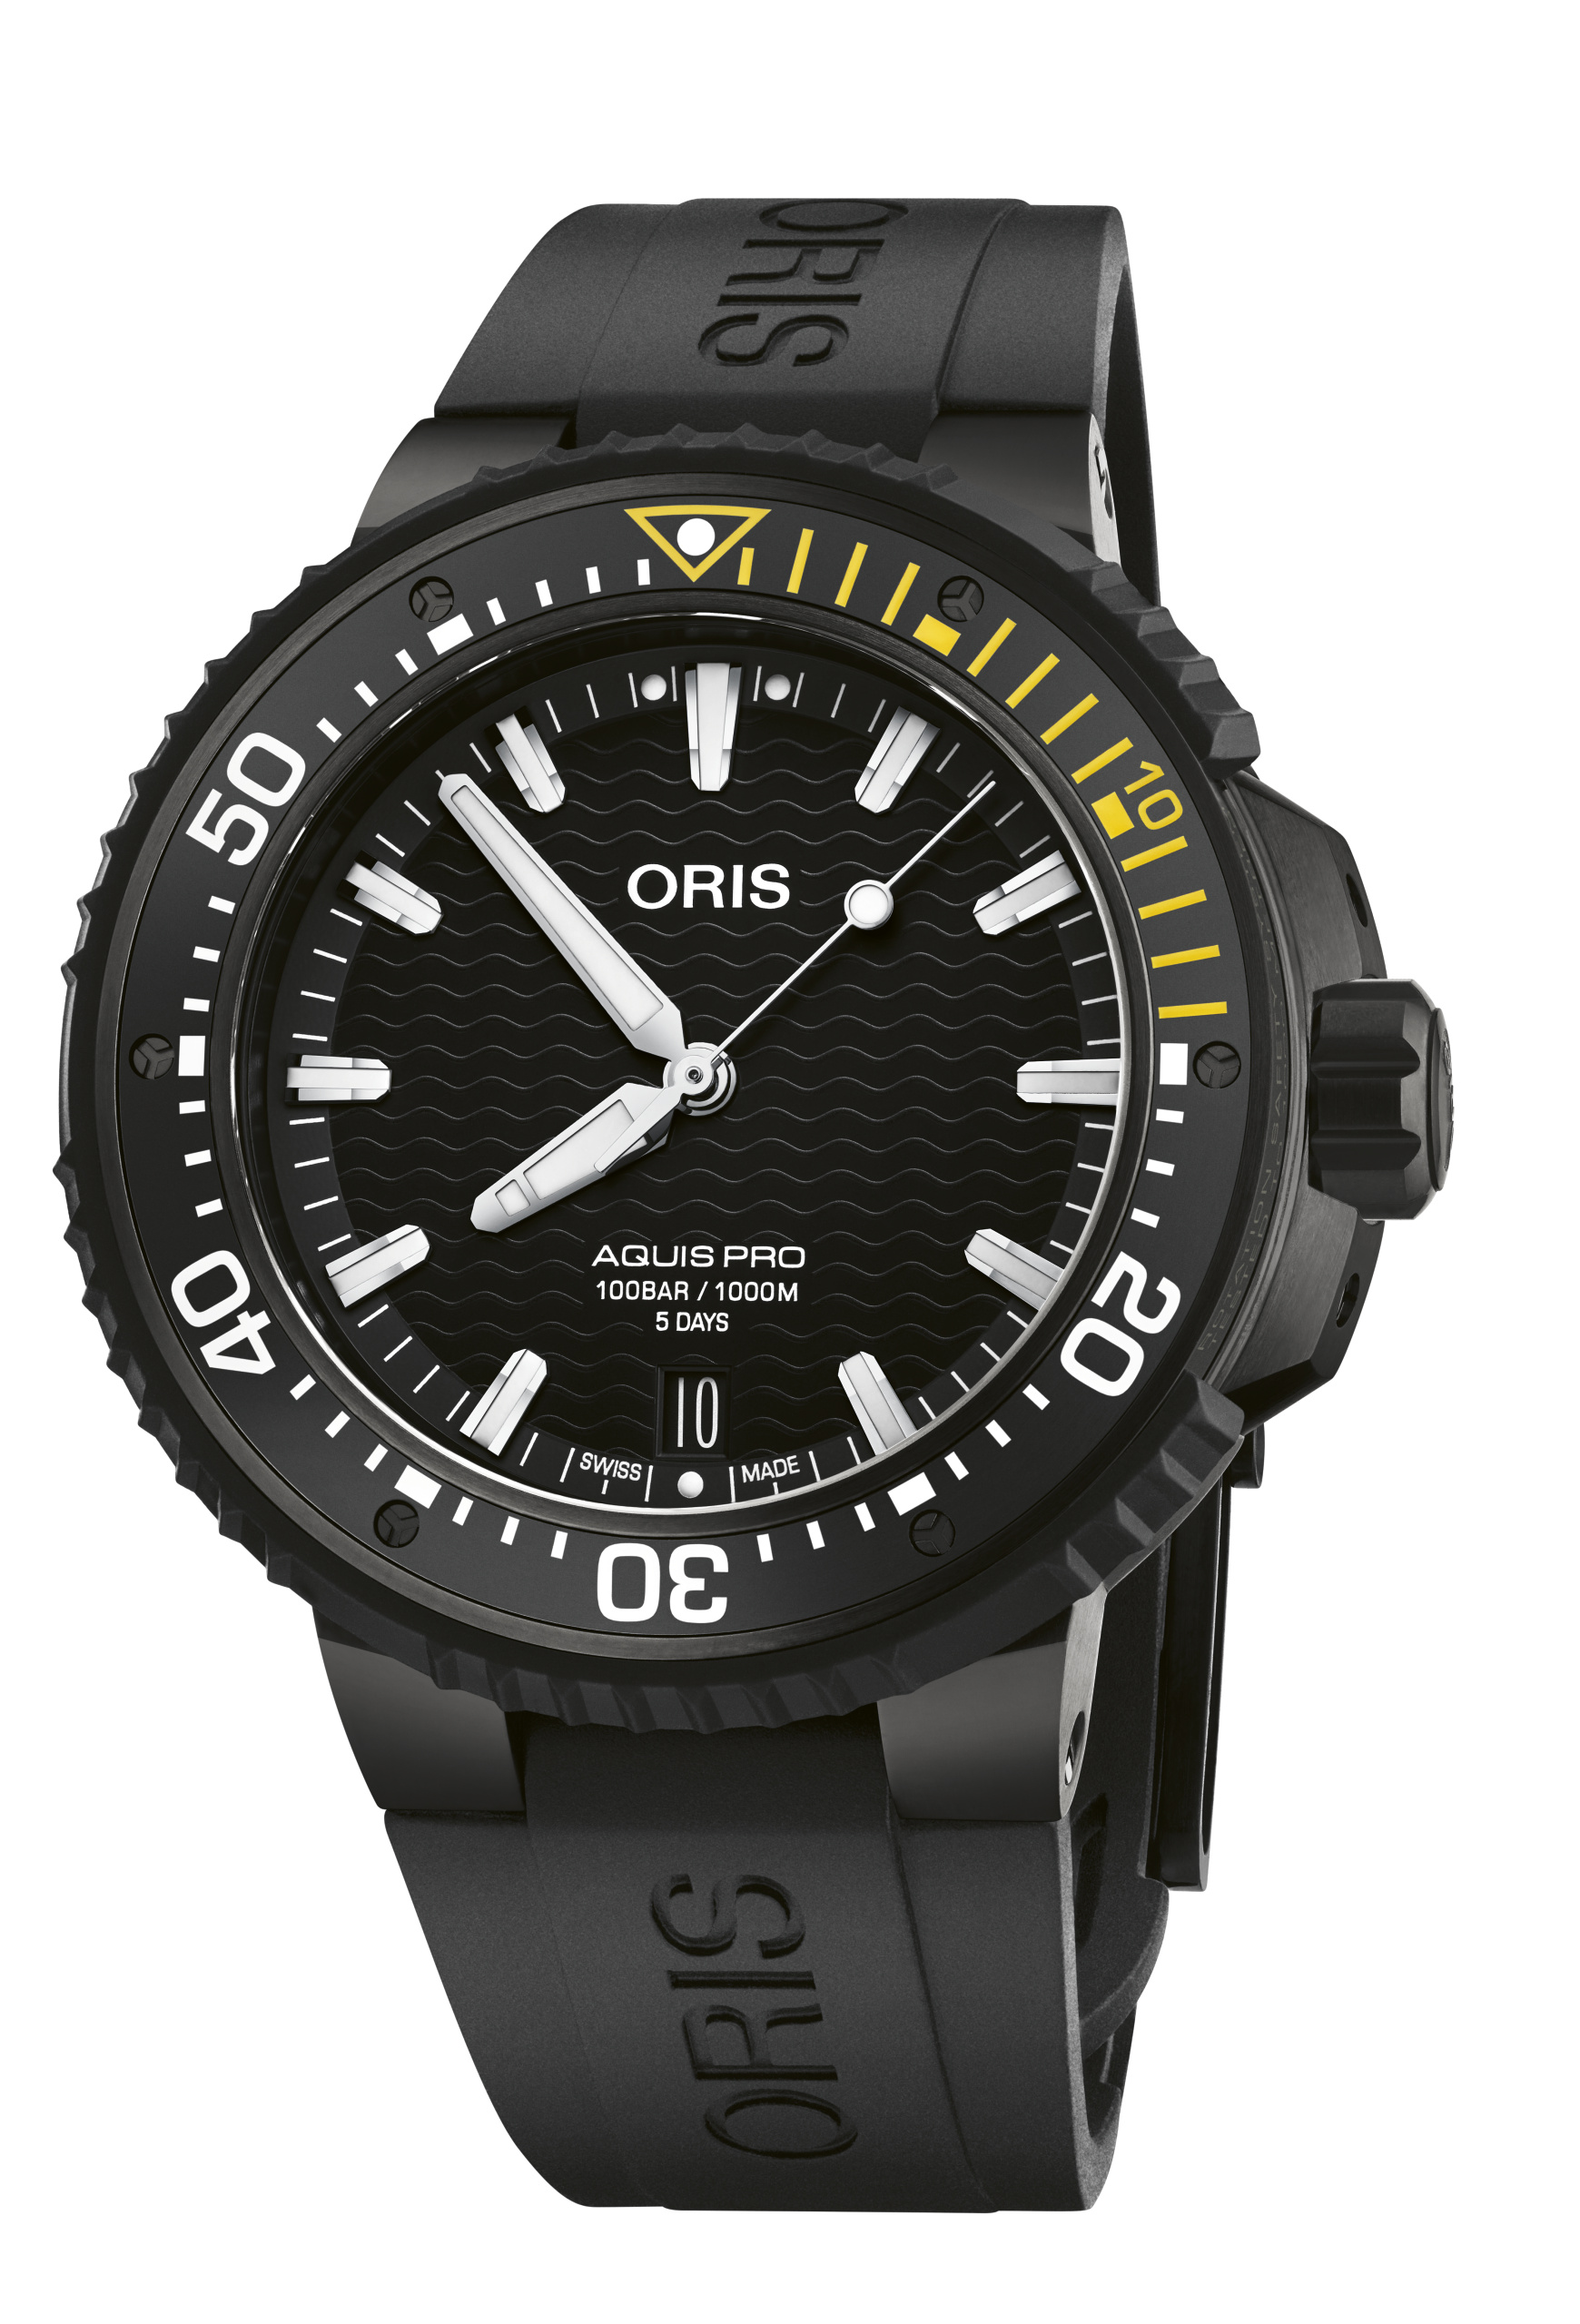 Oris AquisPro Date Calibre 400 Titanium Watch Image